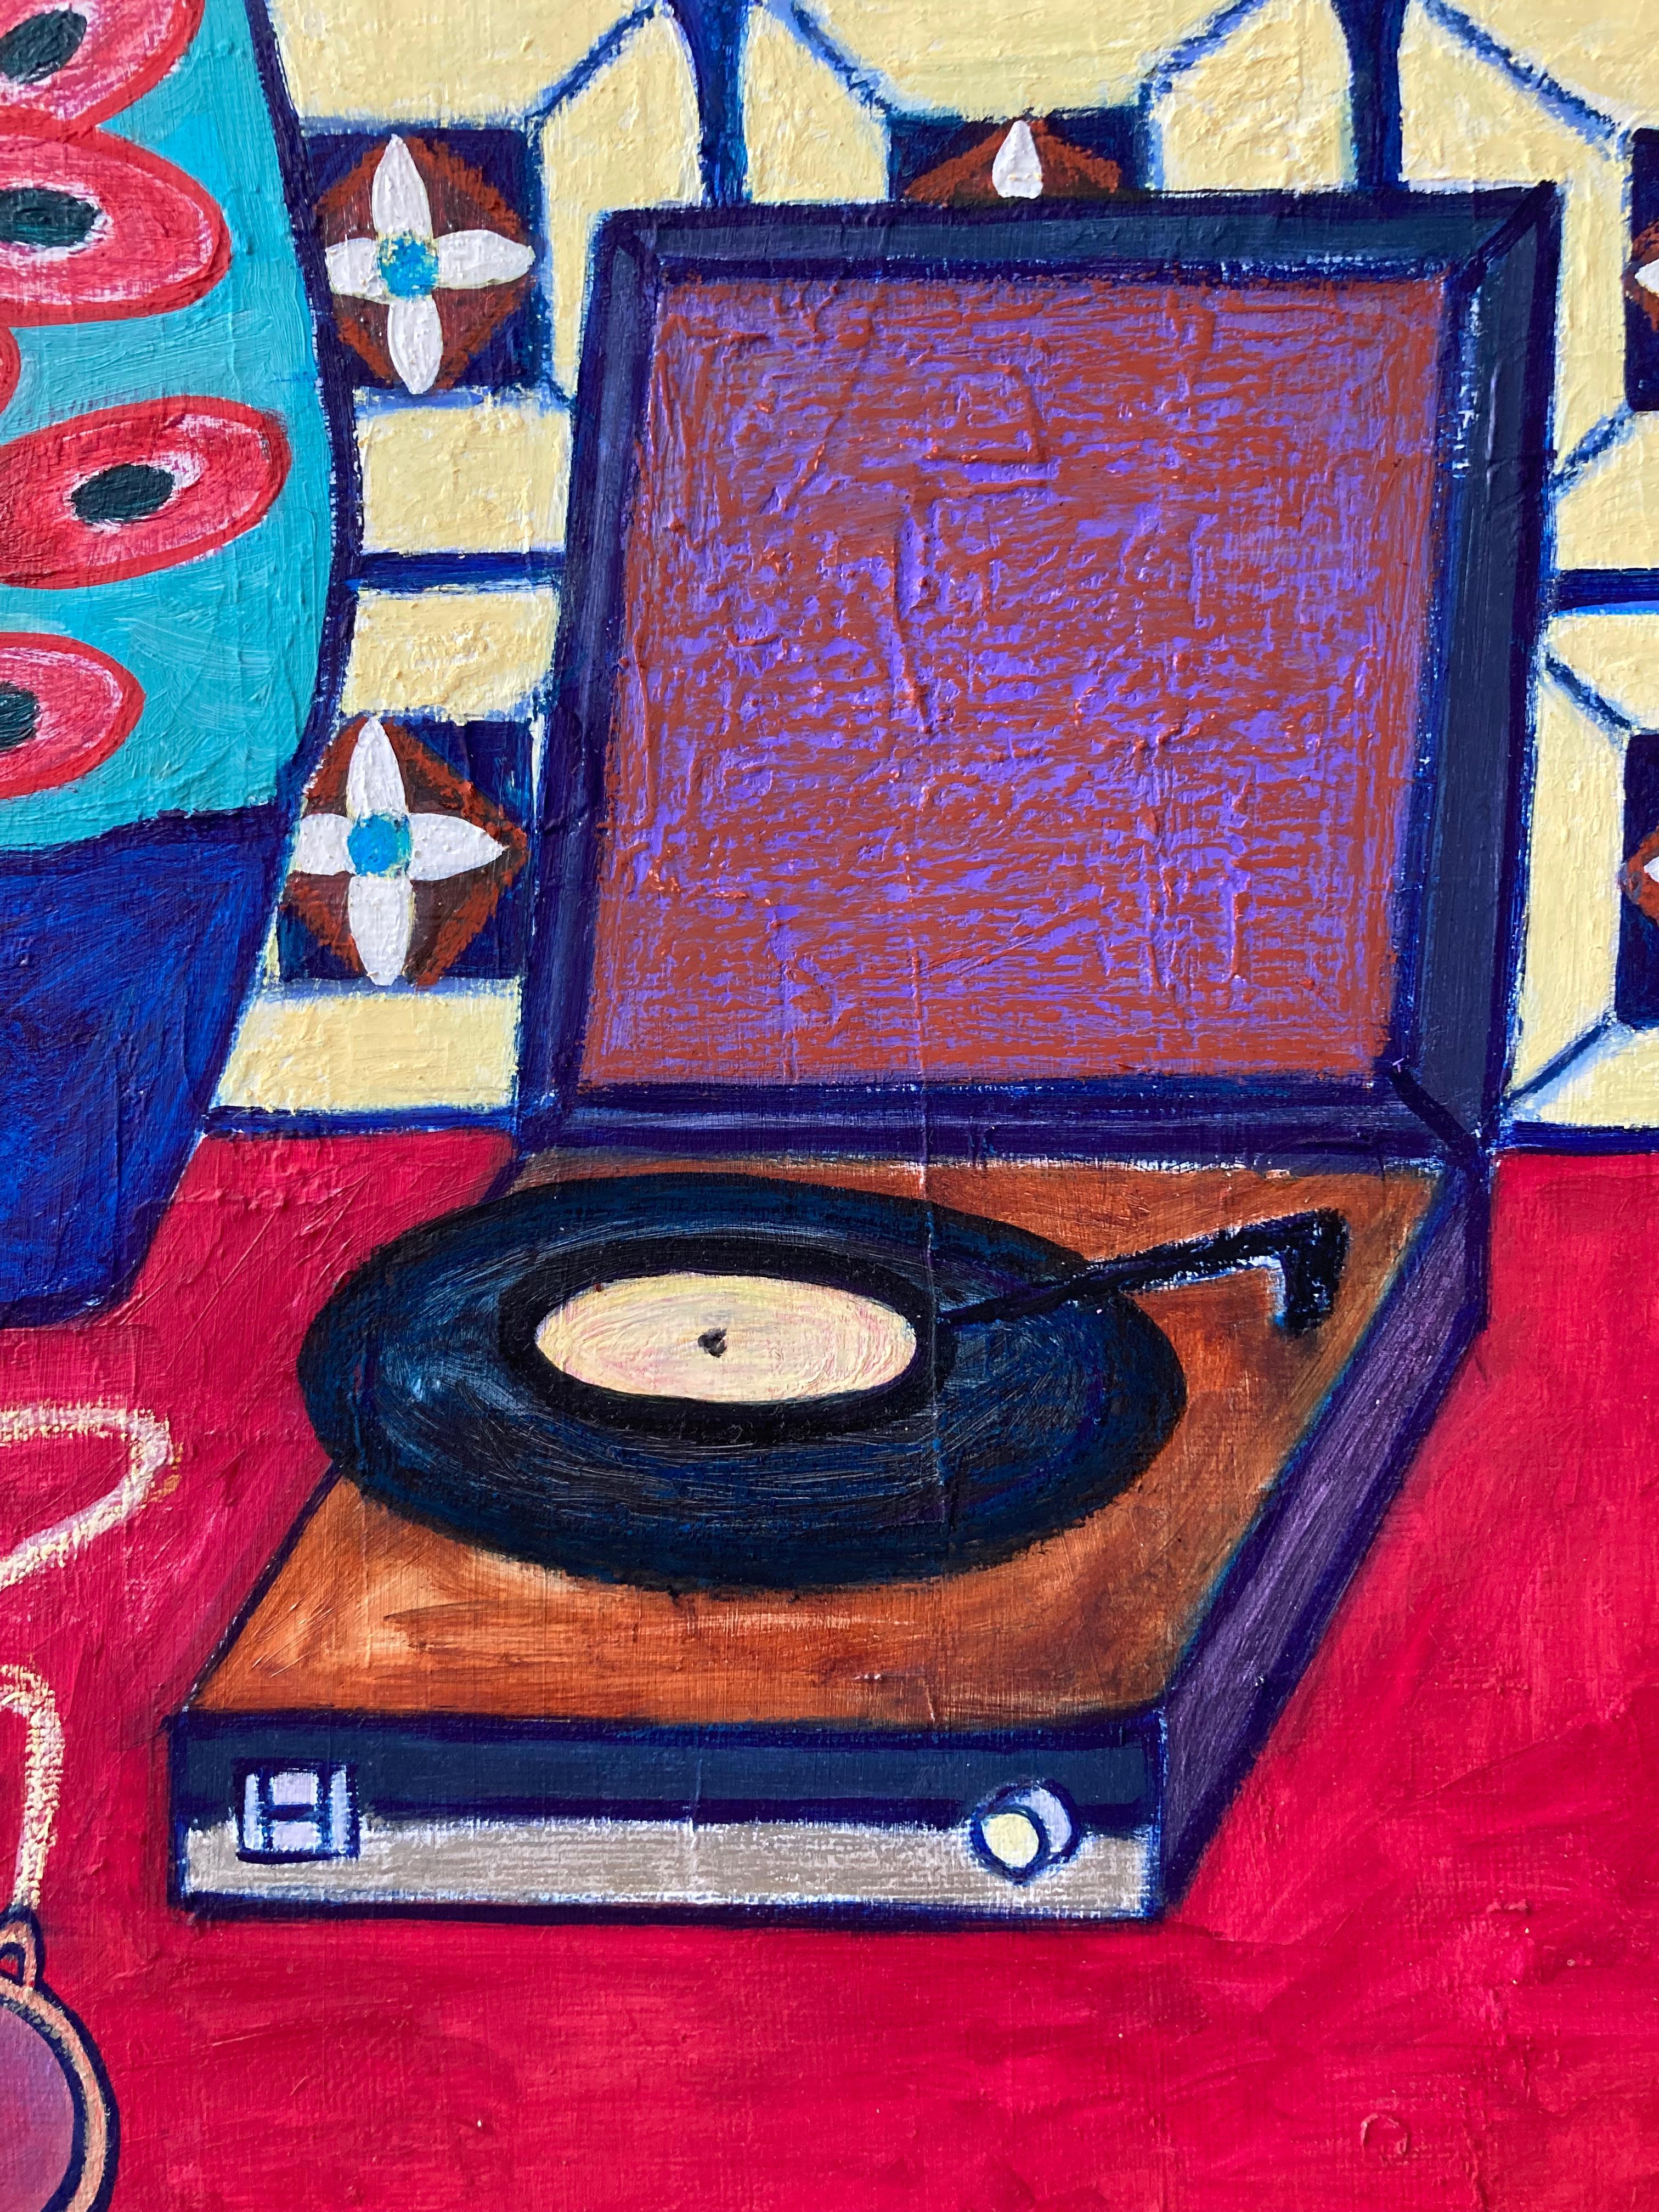 Composition carrée réalisée à l'huile et au pastel gras sur toile de lin dans le style moderne (naiv). Diversité et couleurs vives avec une prédominance du rouge, du bleu, du violet, du turquoise et du jaune. Fabriqué en plusieurs couches avec un